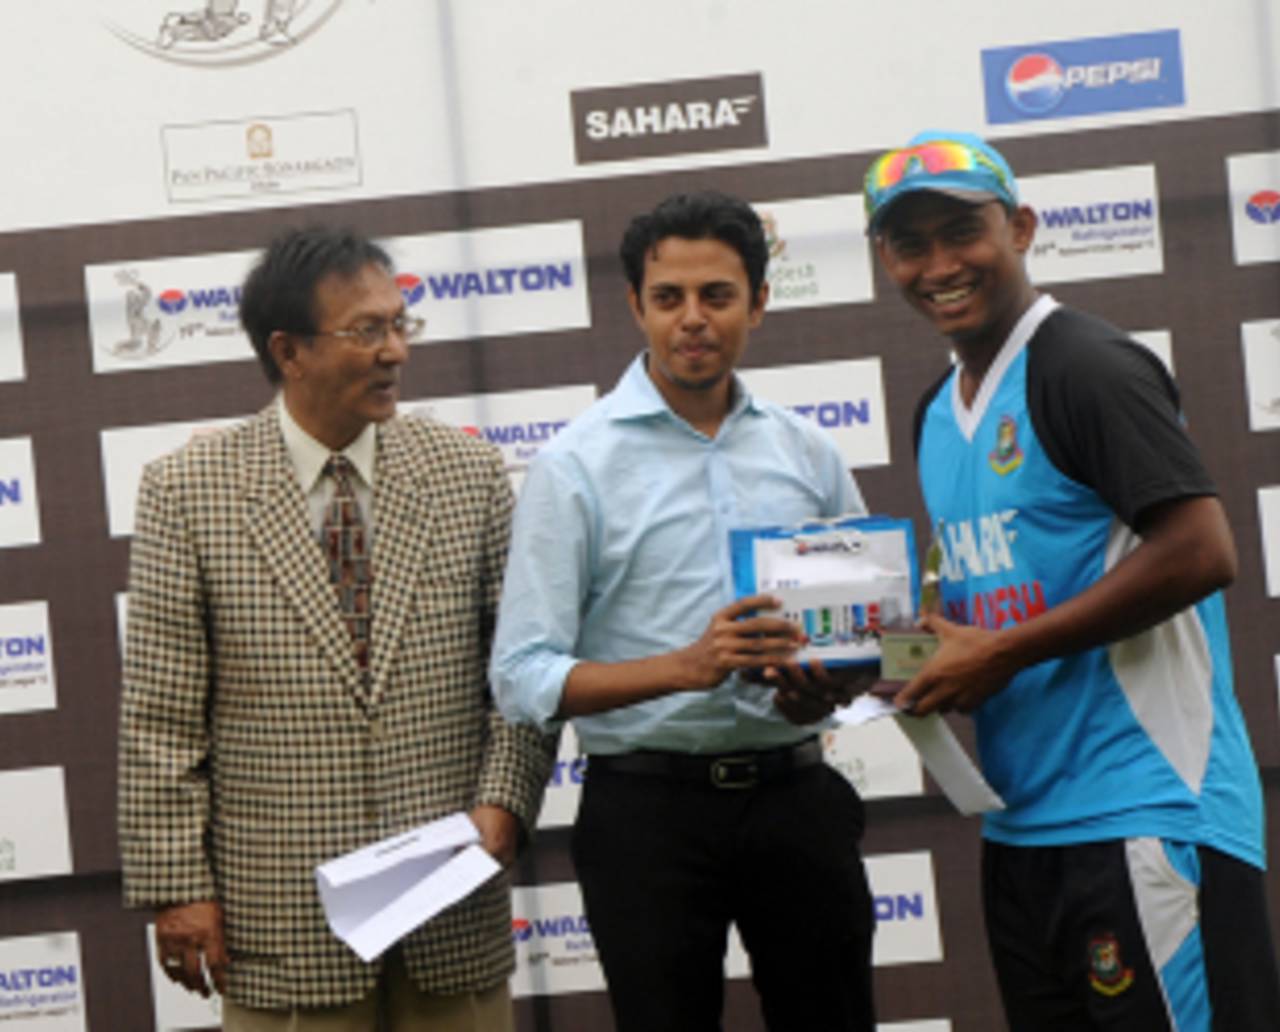 Asif Ahmed scored 86 to help Dhaka Metropolis score 205 and gain a bonus point in the drawn game in Mirpur&nbsp;&nbsp;&bull;&nbsp;&nbsp;Bangladesh Cricket Board